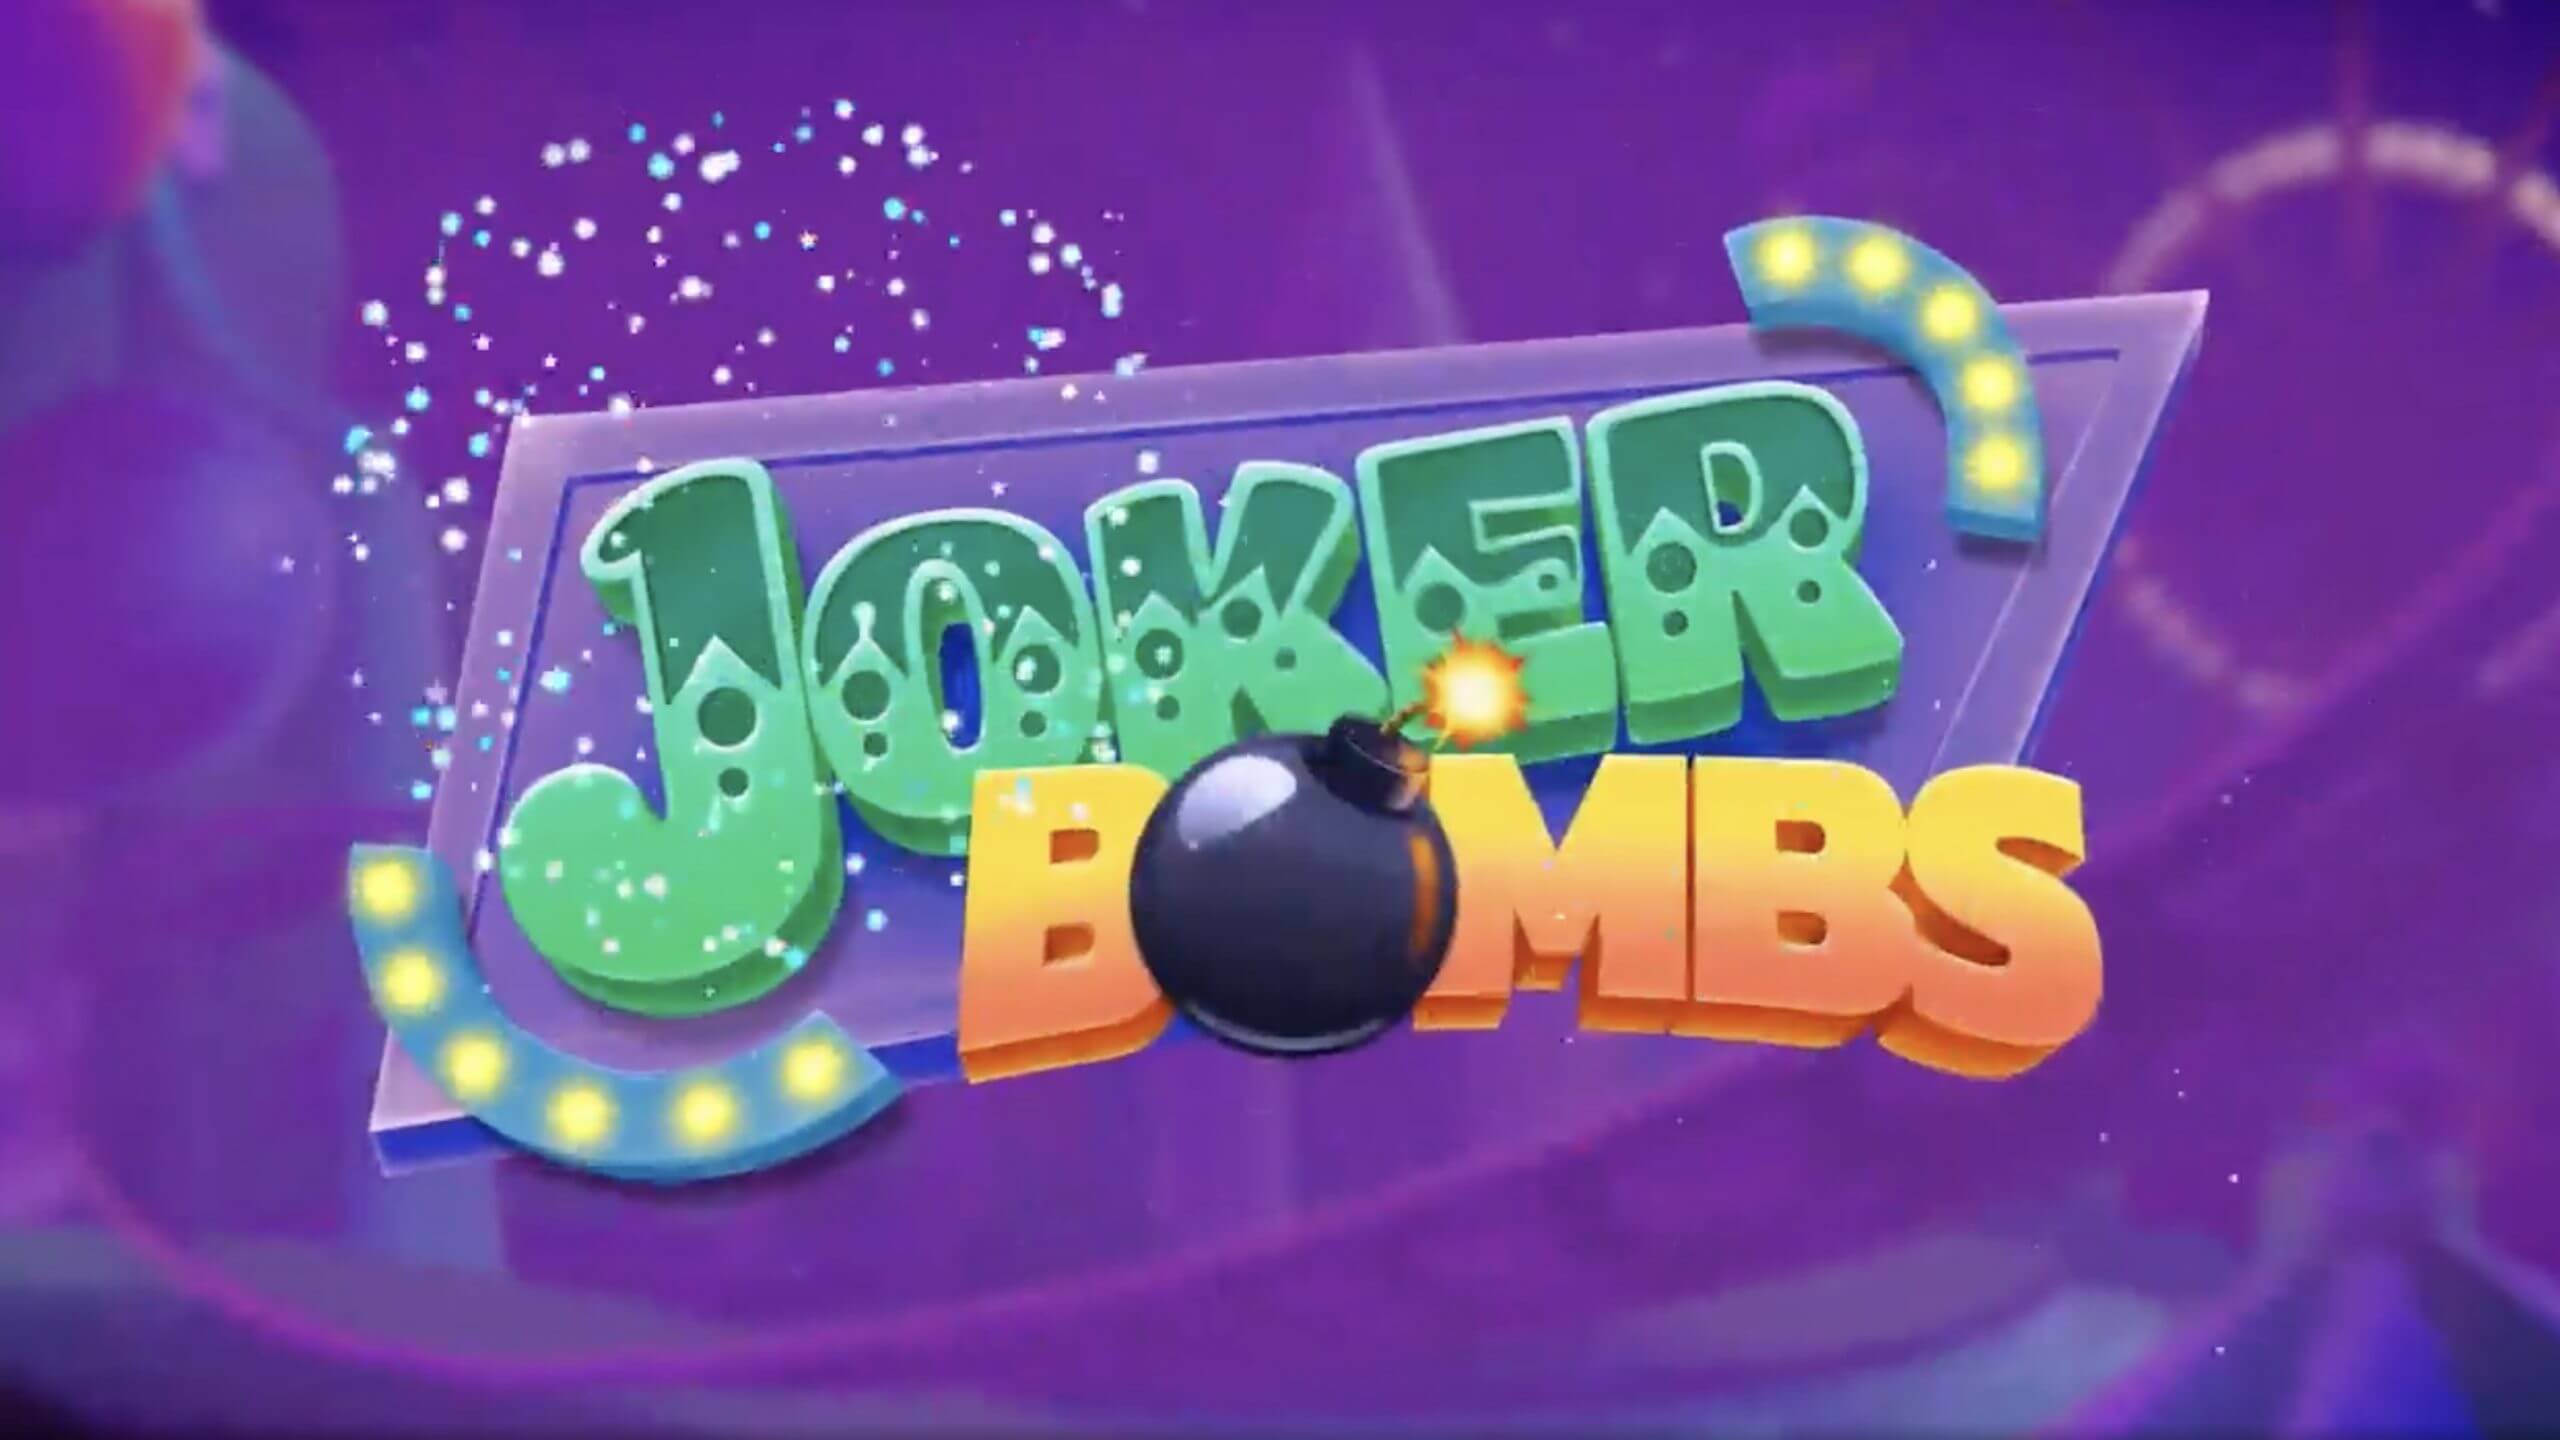 Joker bombs